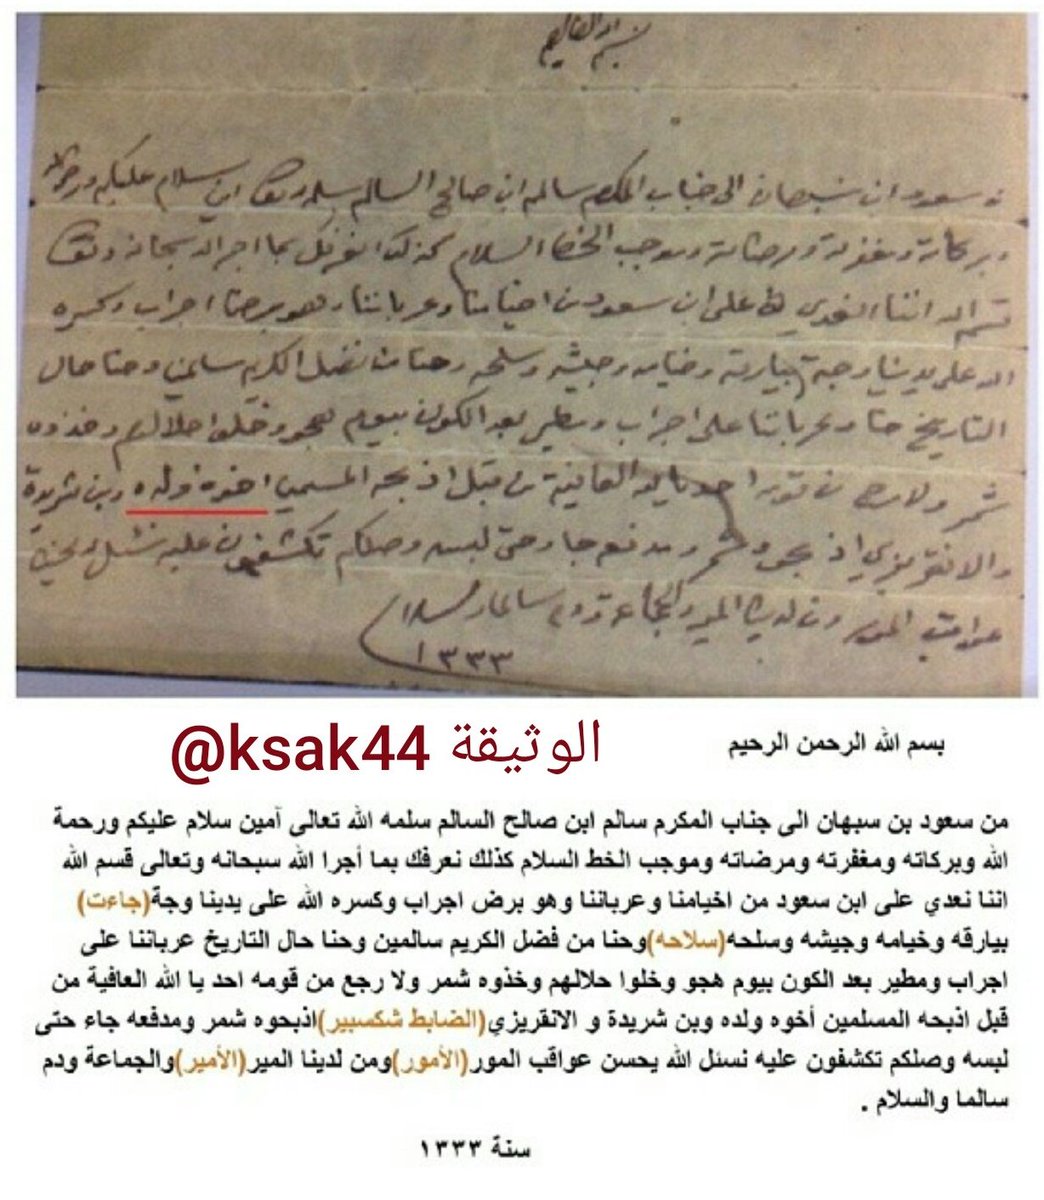 الوثيقة Ar Twitter رسالة من سعود السبهان عن نتائج معركة جراب عام 1333 ويذكر مقتل ابن شريدة ومقتل الانقريزي يقصد الضابط شكسبير